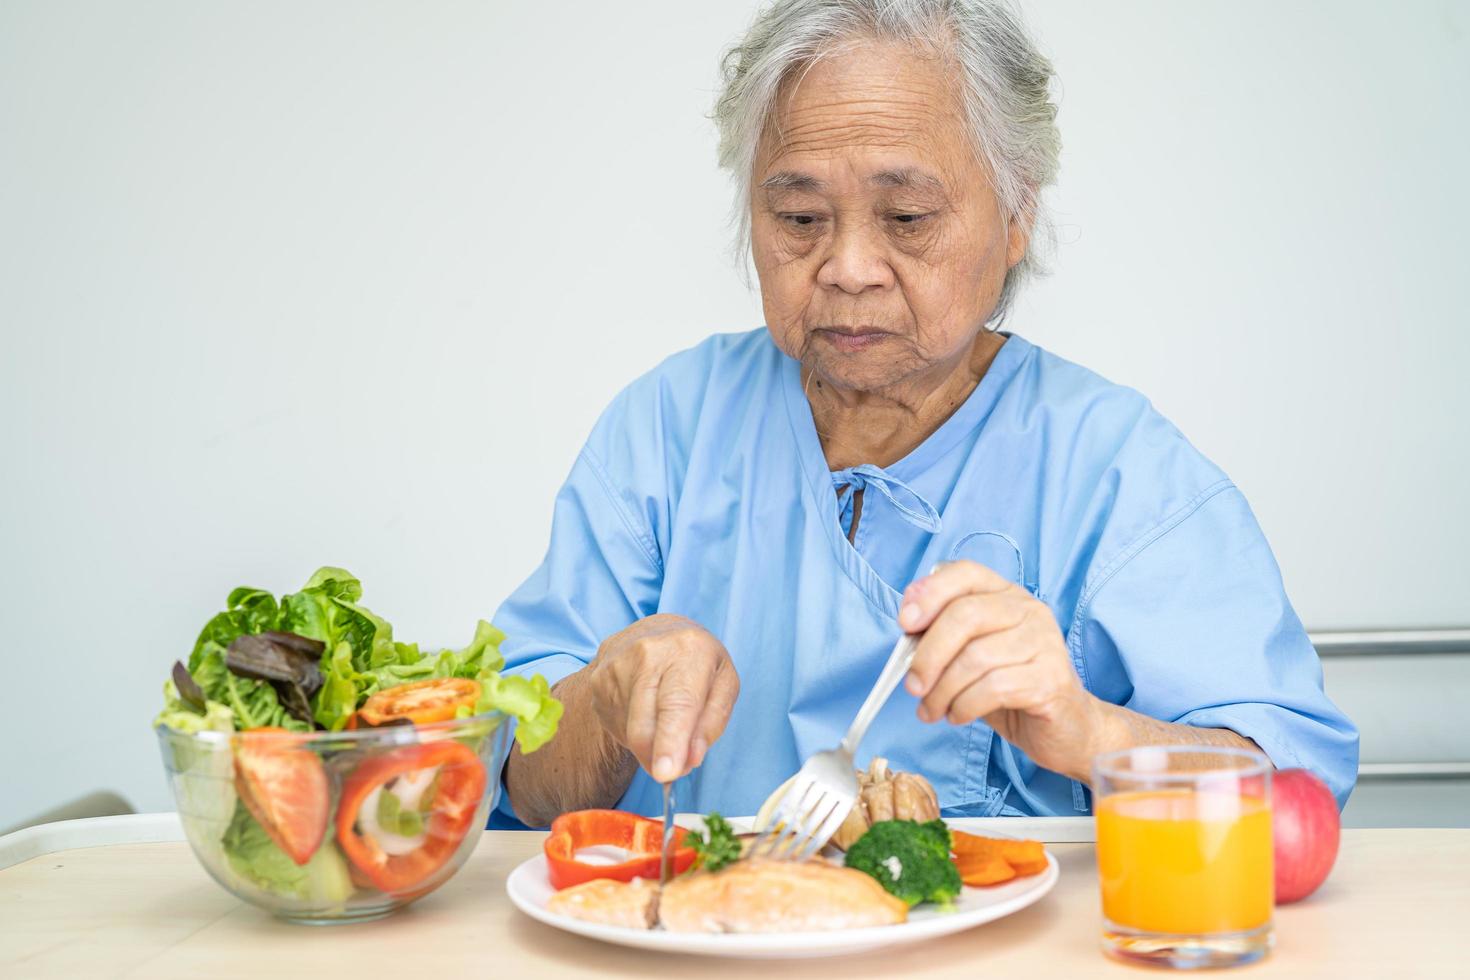 une vieille dame asiatique ou une vieille dame patiente mangeant un petit-déjeuner de steak de saumon avec des aliments sains aux légumes tout en étant assise et affamée sur son lit à l'hôpital. photo